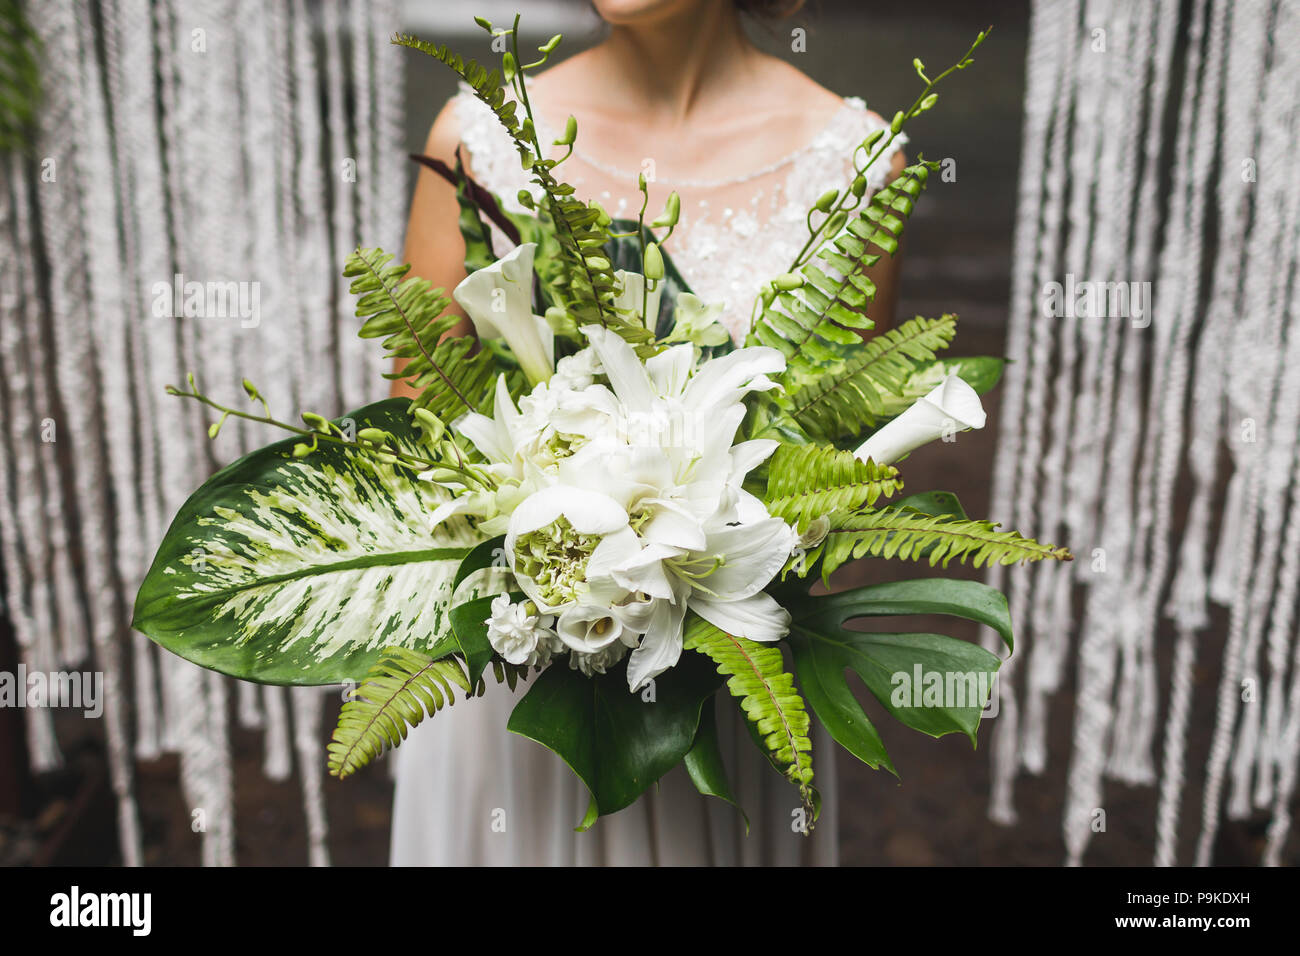 Sposa tenendo in mano un enorme bouquet di verde con foglie tropicali e fiori Foto Stock